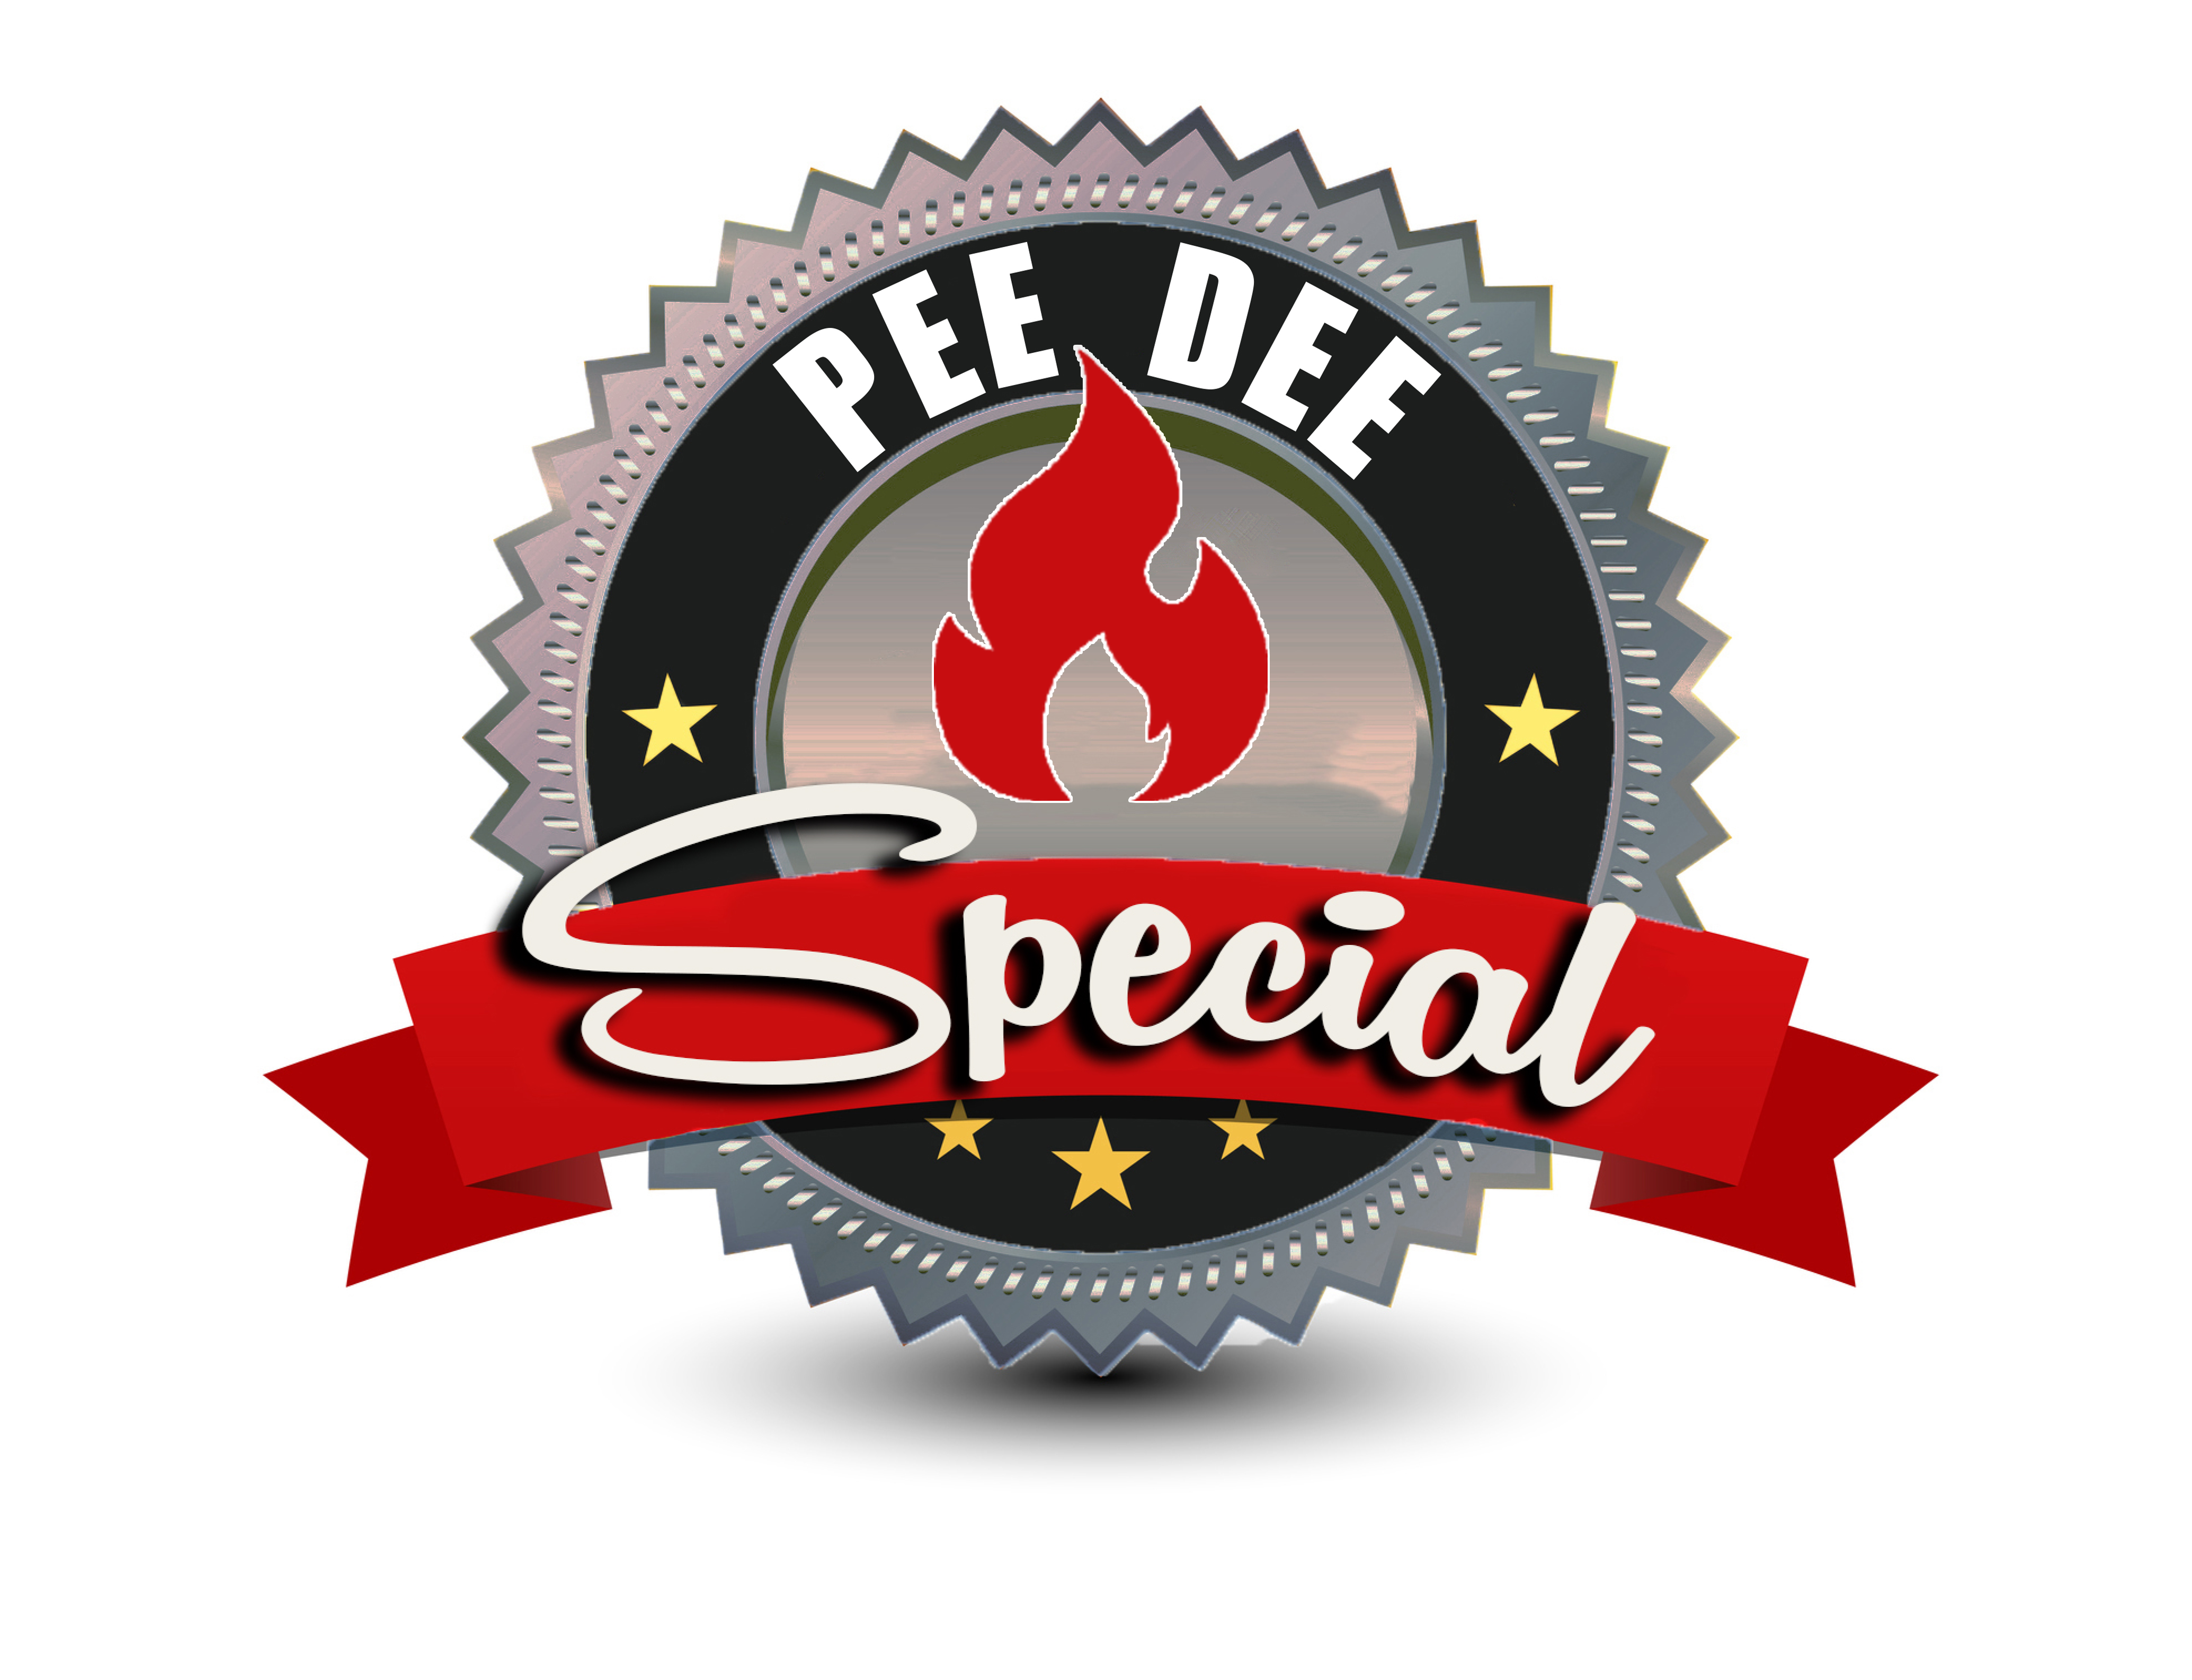 Pee Dee Special logo